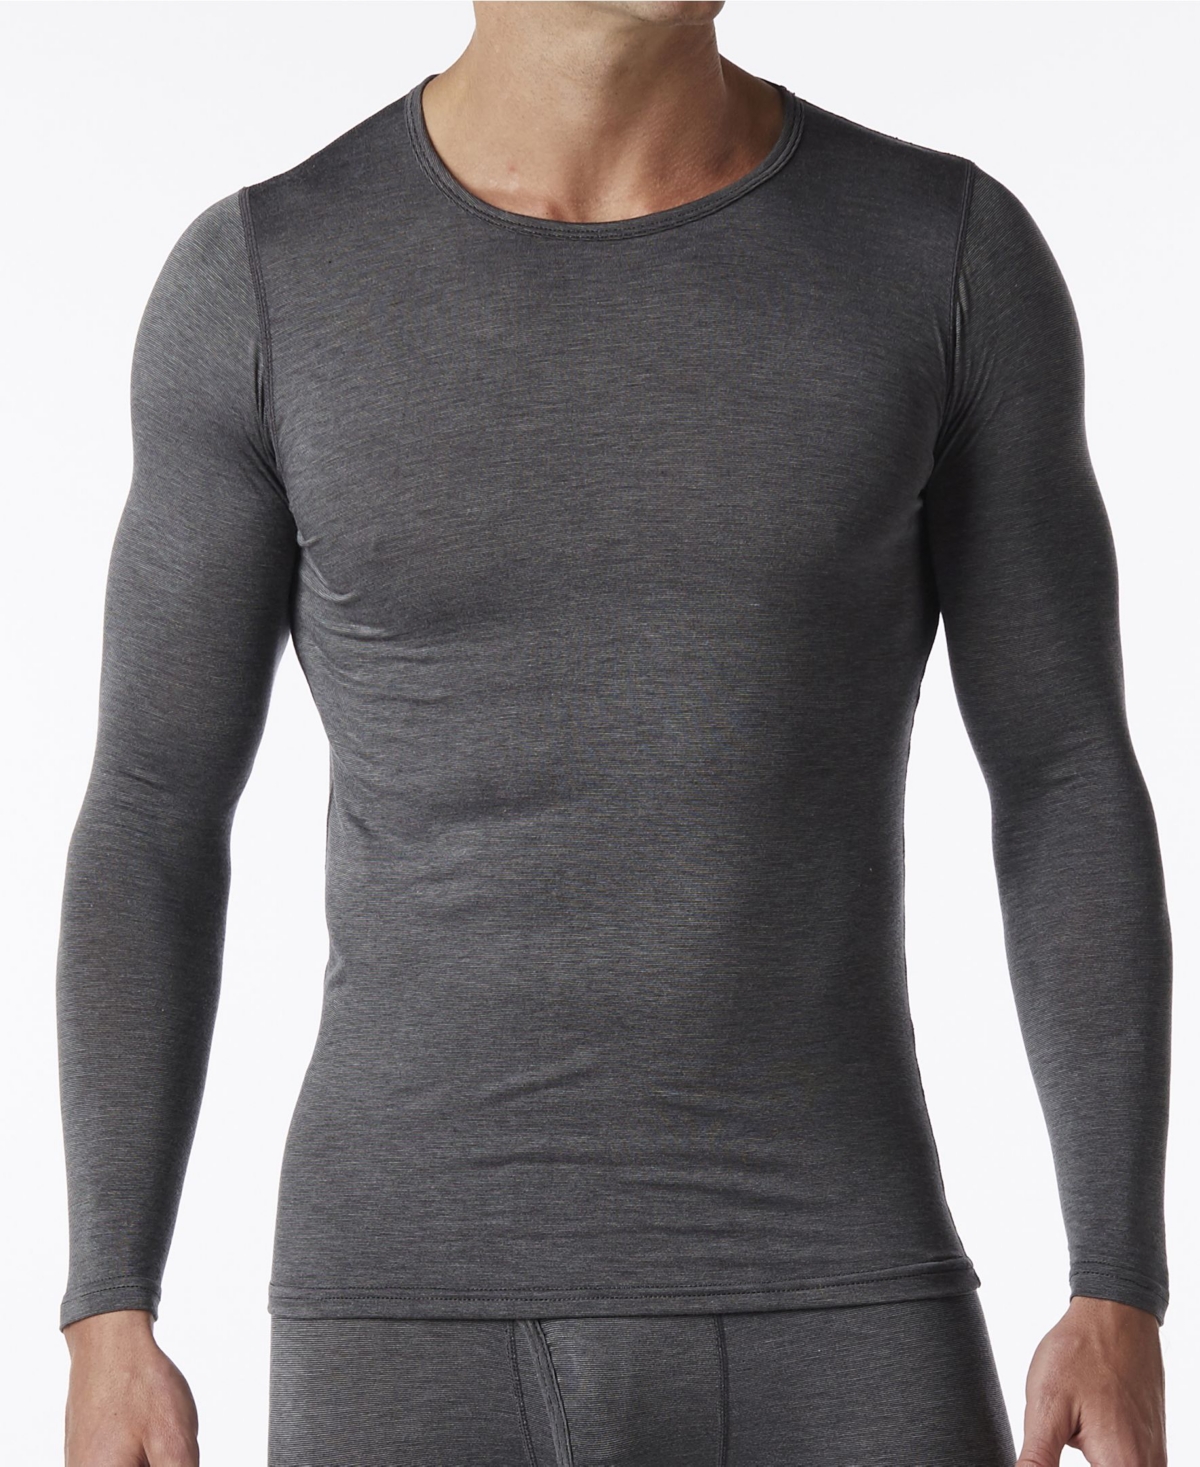 HeatFX Men's Lightweight Jersey Thermal Long Sleeve Shirt - Charcoal